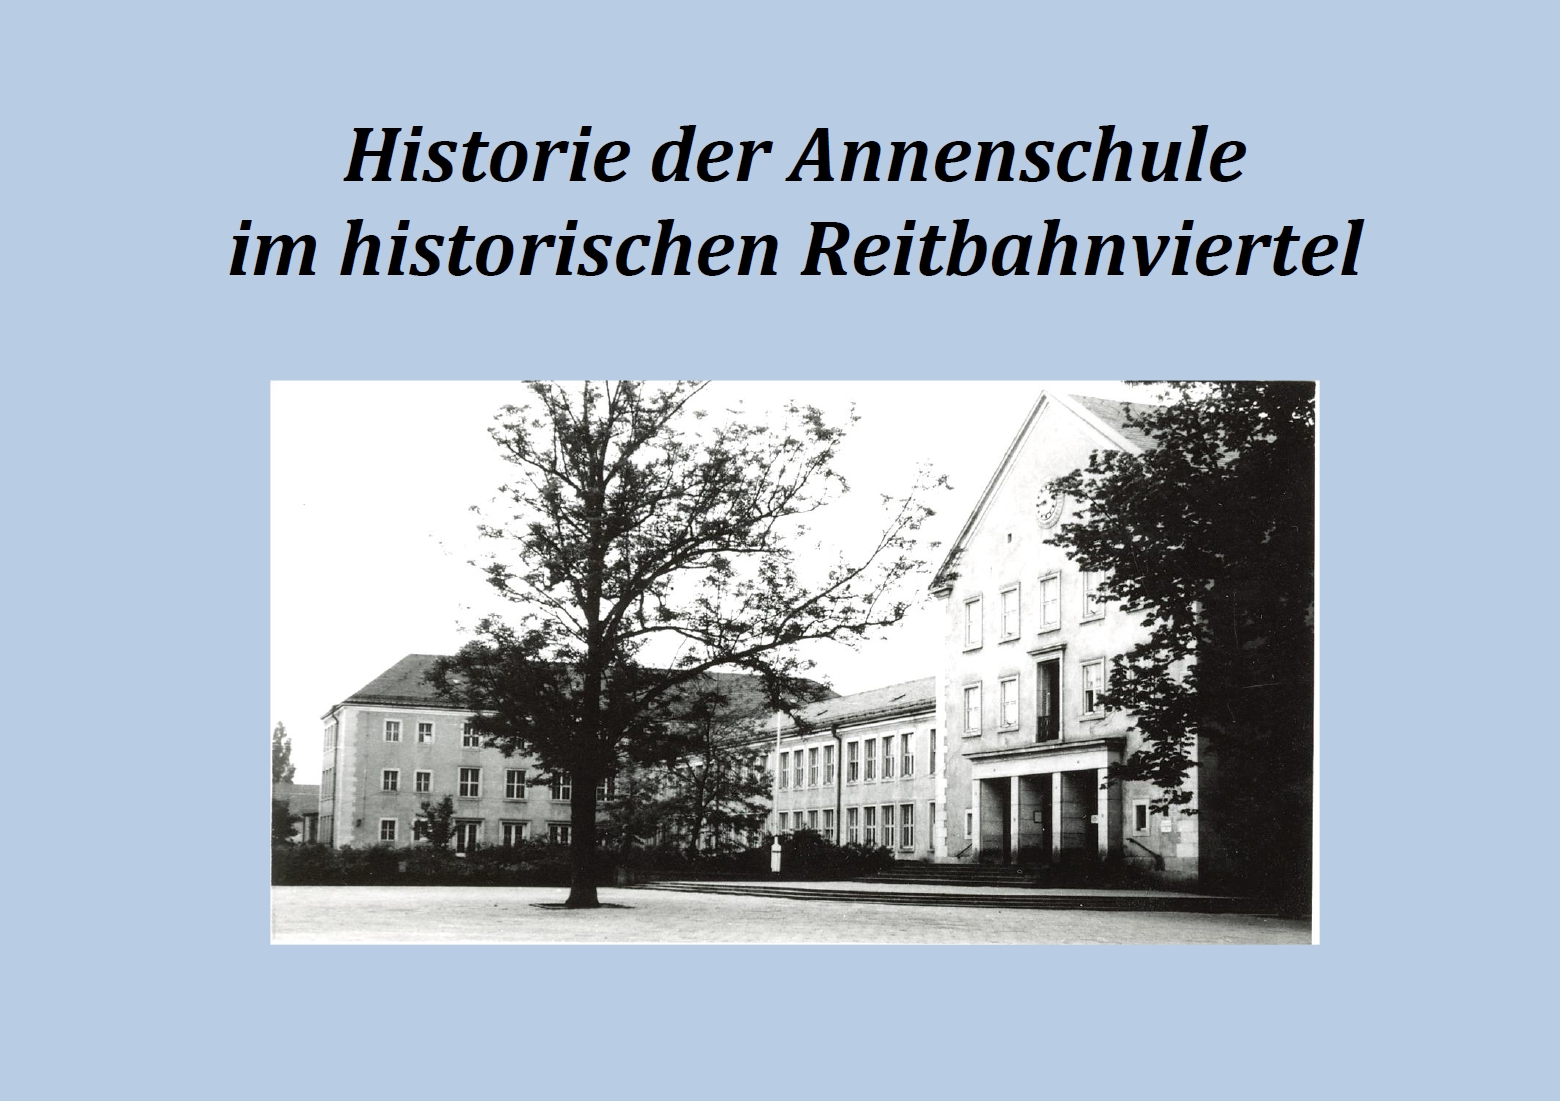 Titelbild der Präsentation zur Historie der Annenschule